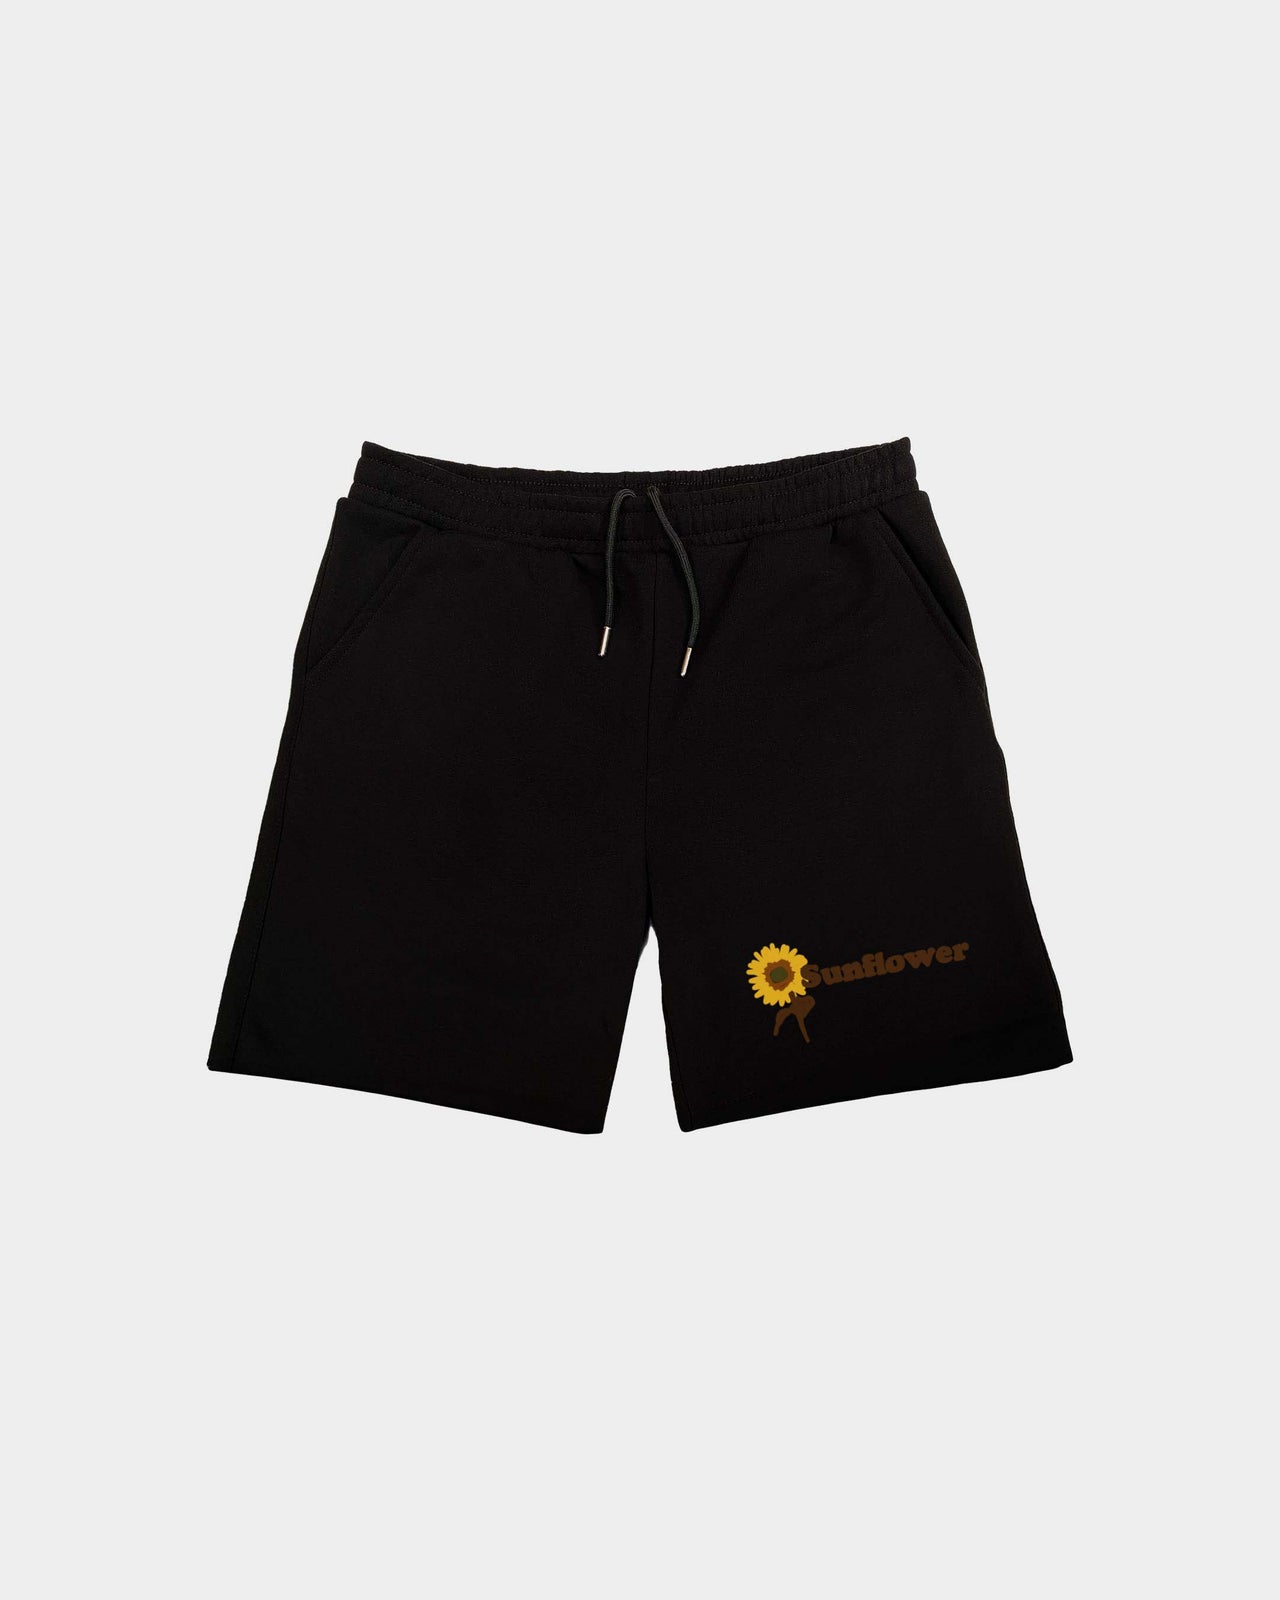 Sunflower Men's Shorts